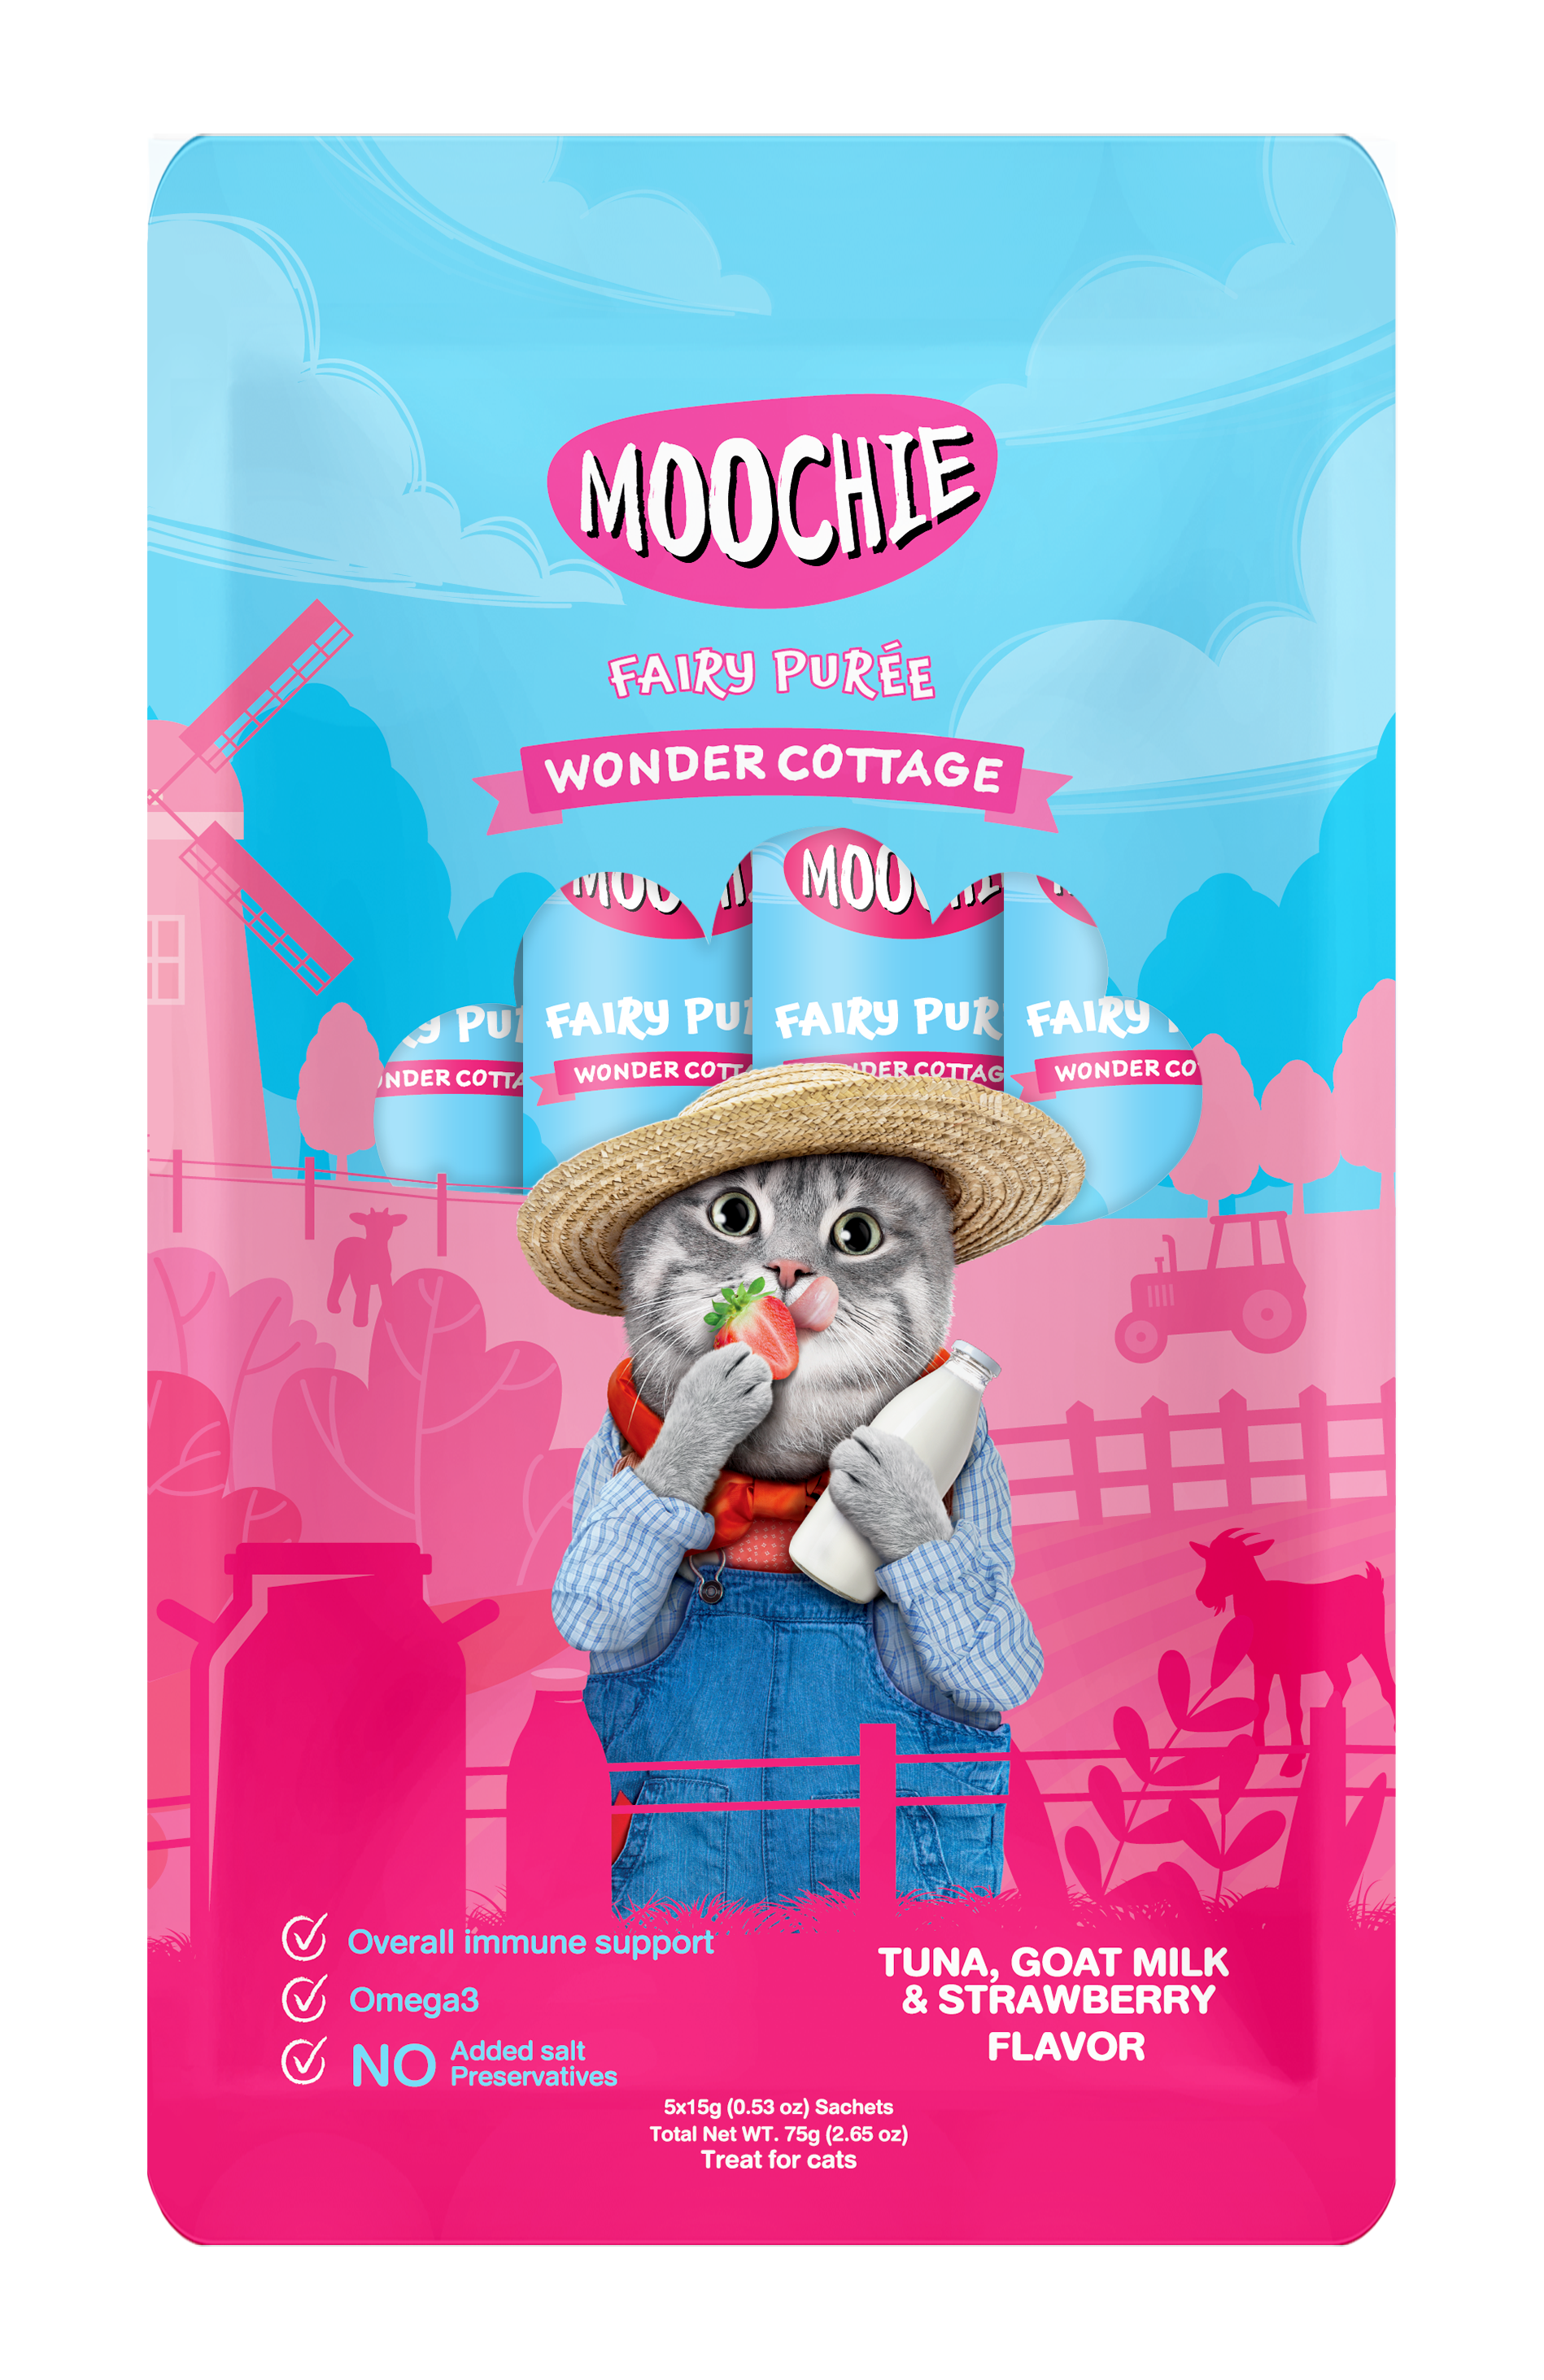 Moochie Wonder Cottage Tuna, Goat Milk & Strawberry Flavor 15g Pouch